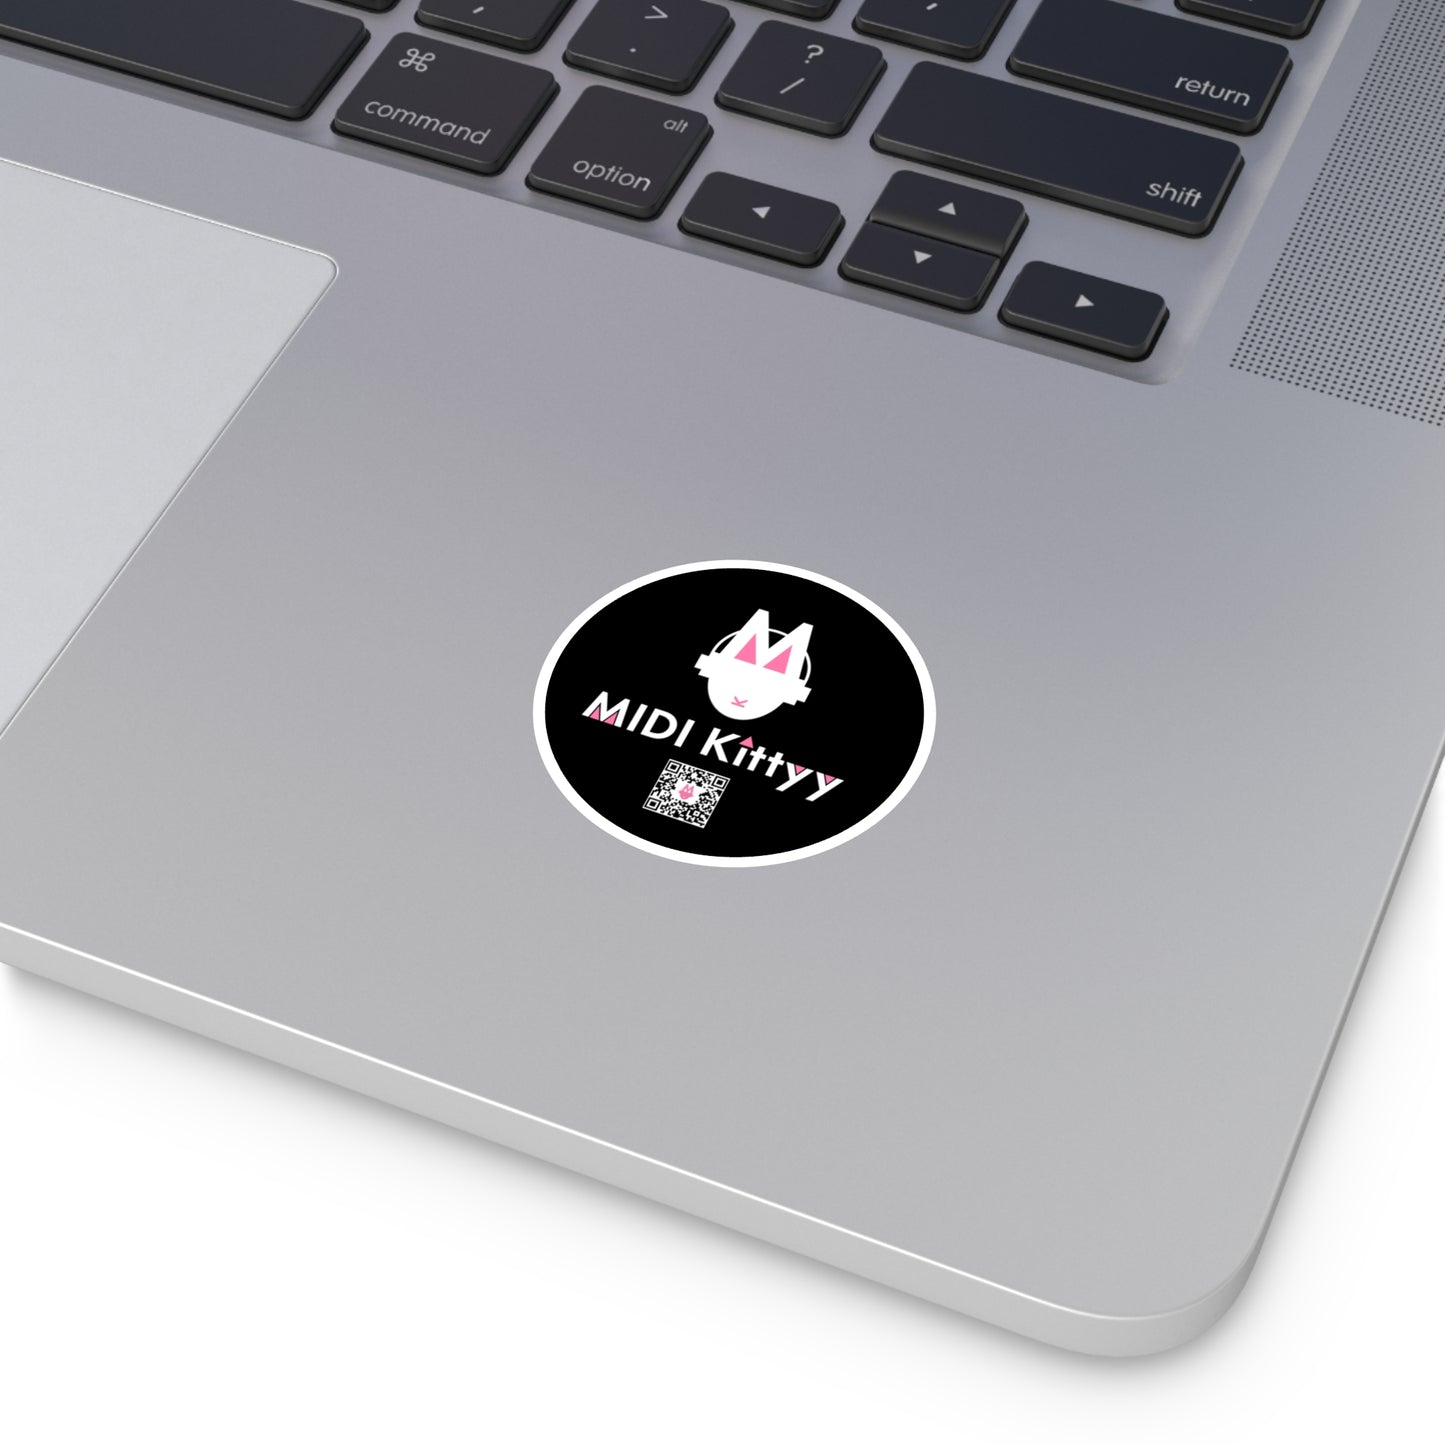 White on Black Round Logo Stickers